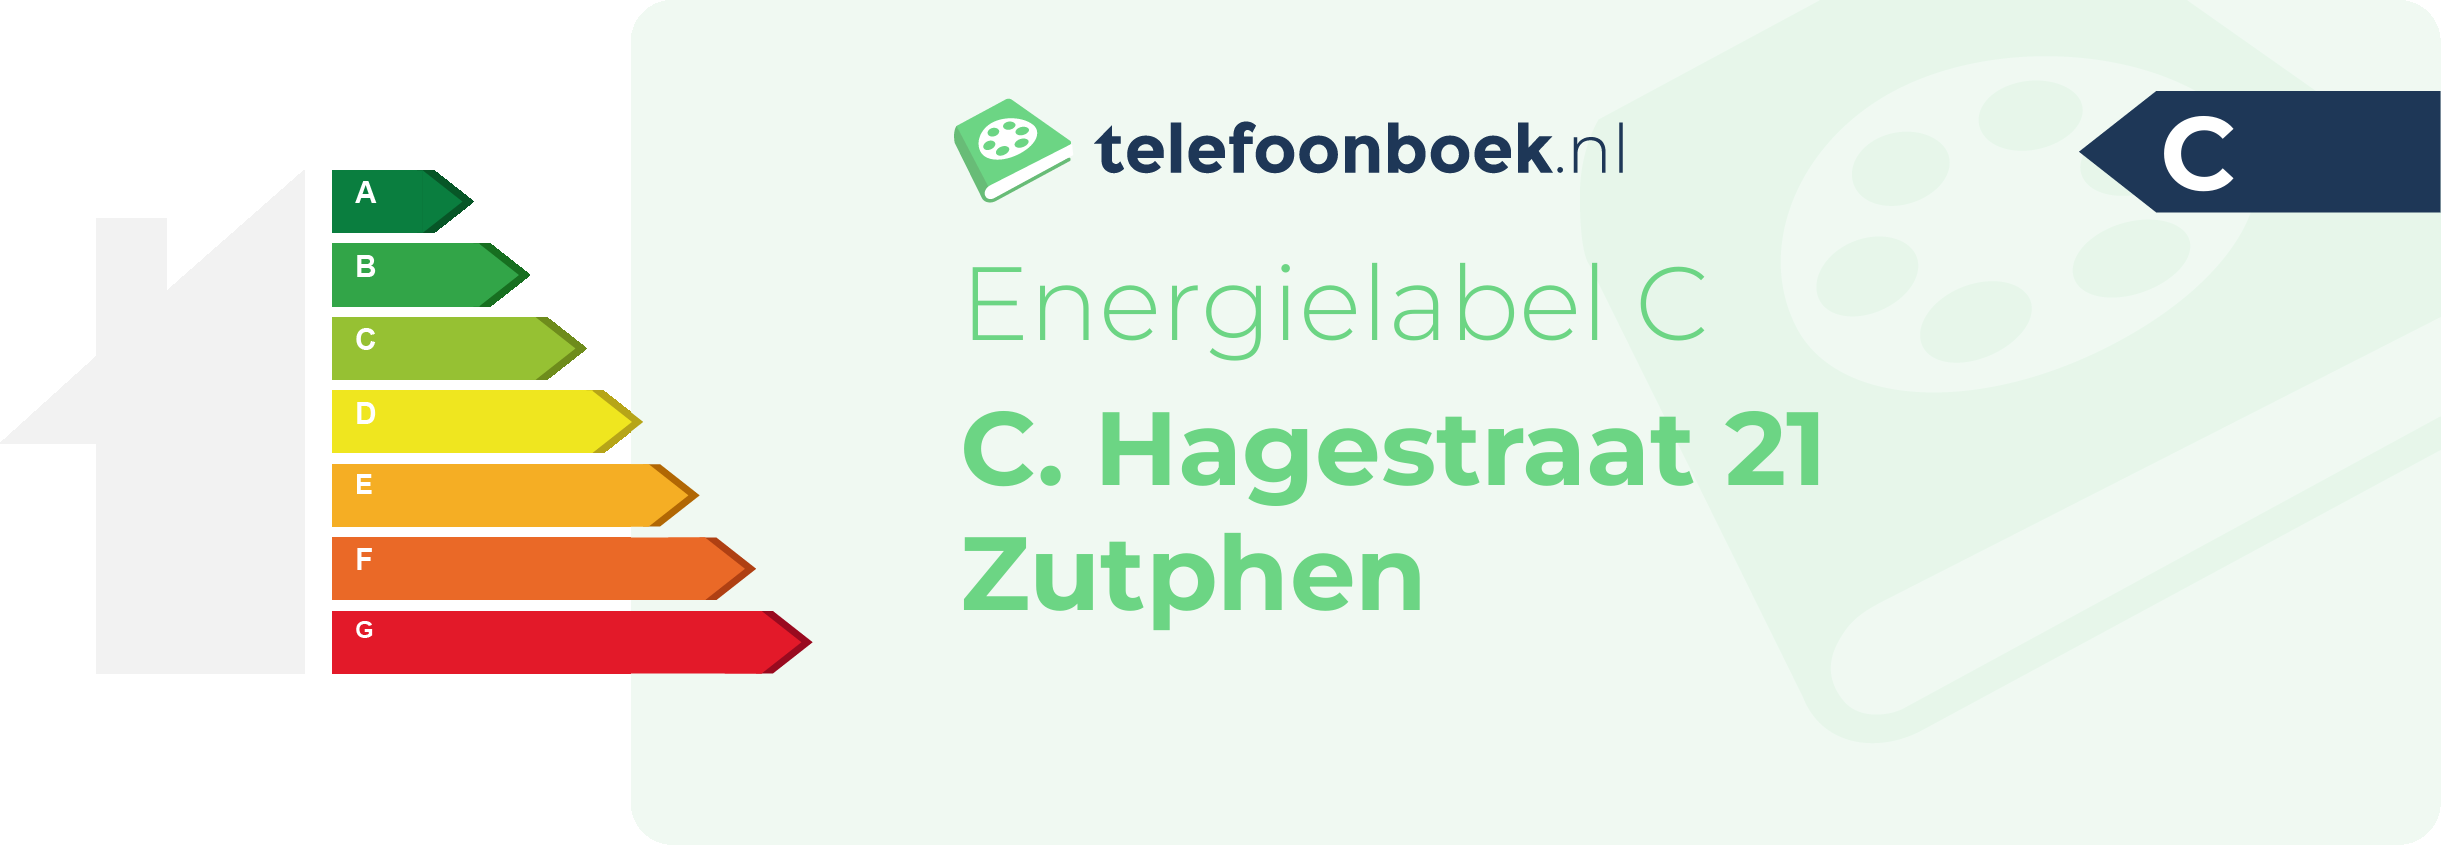 Energielabel C. Hagestraat 21 Zutphen